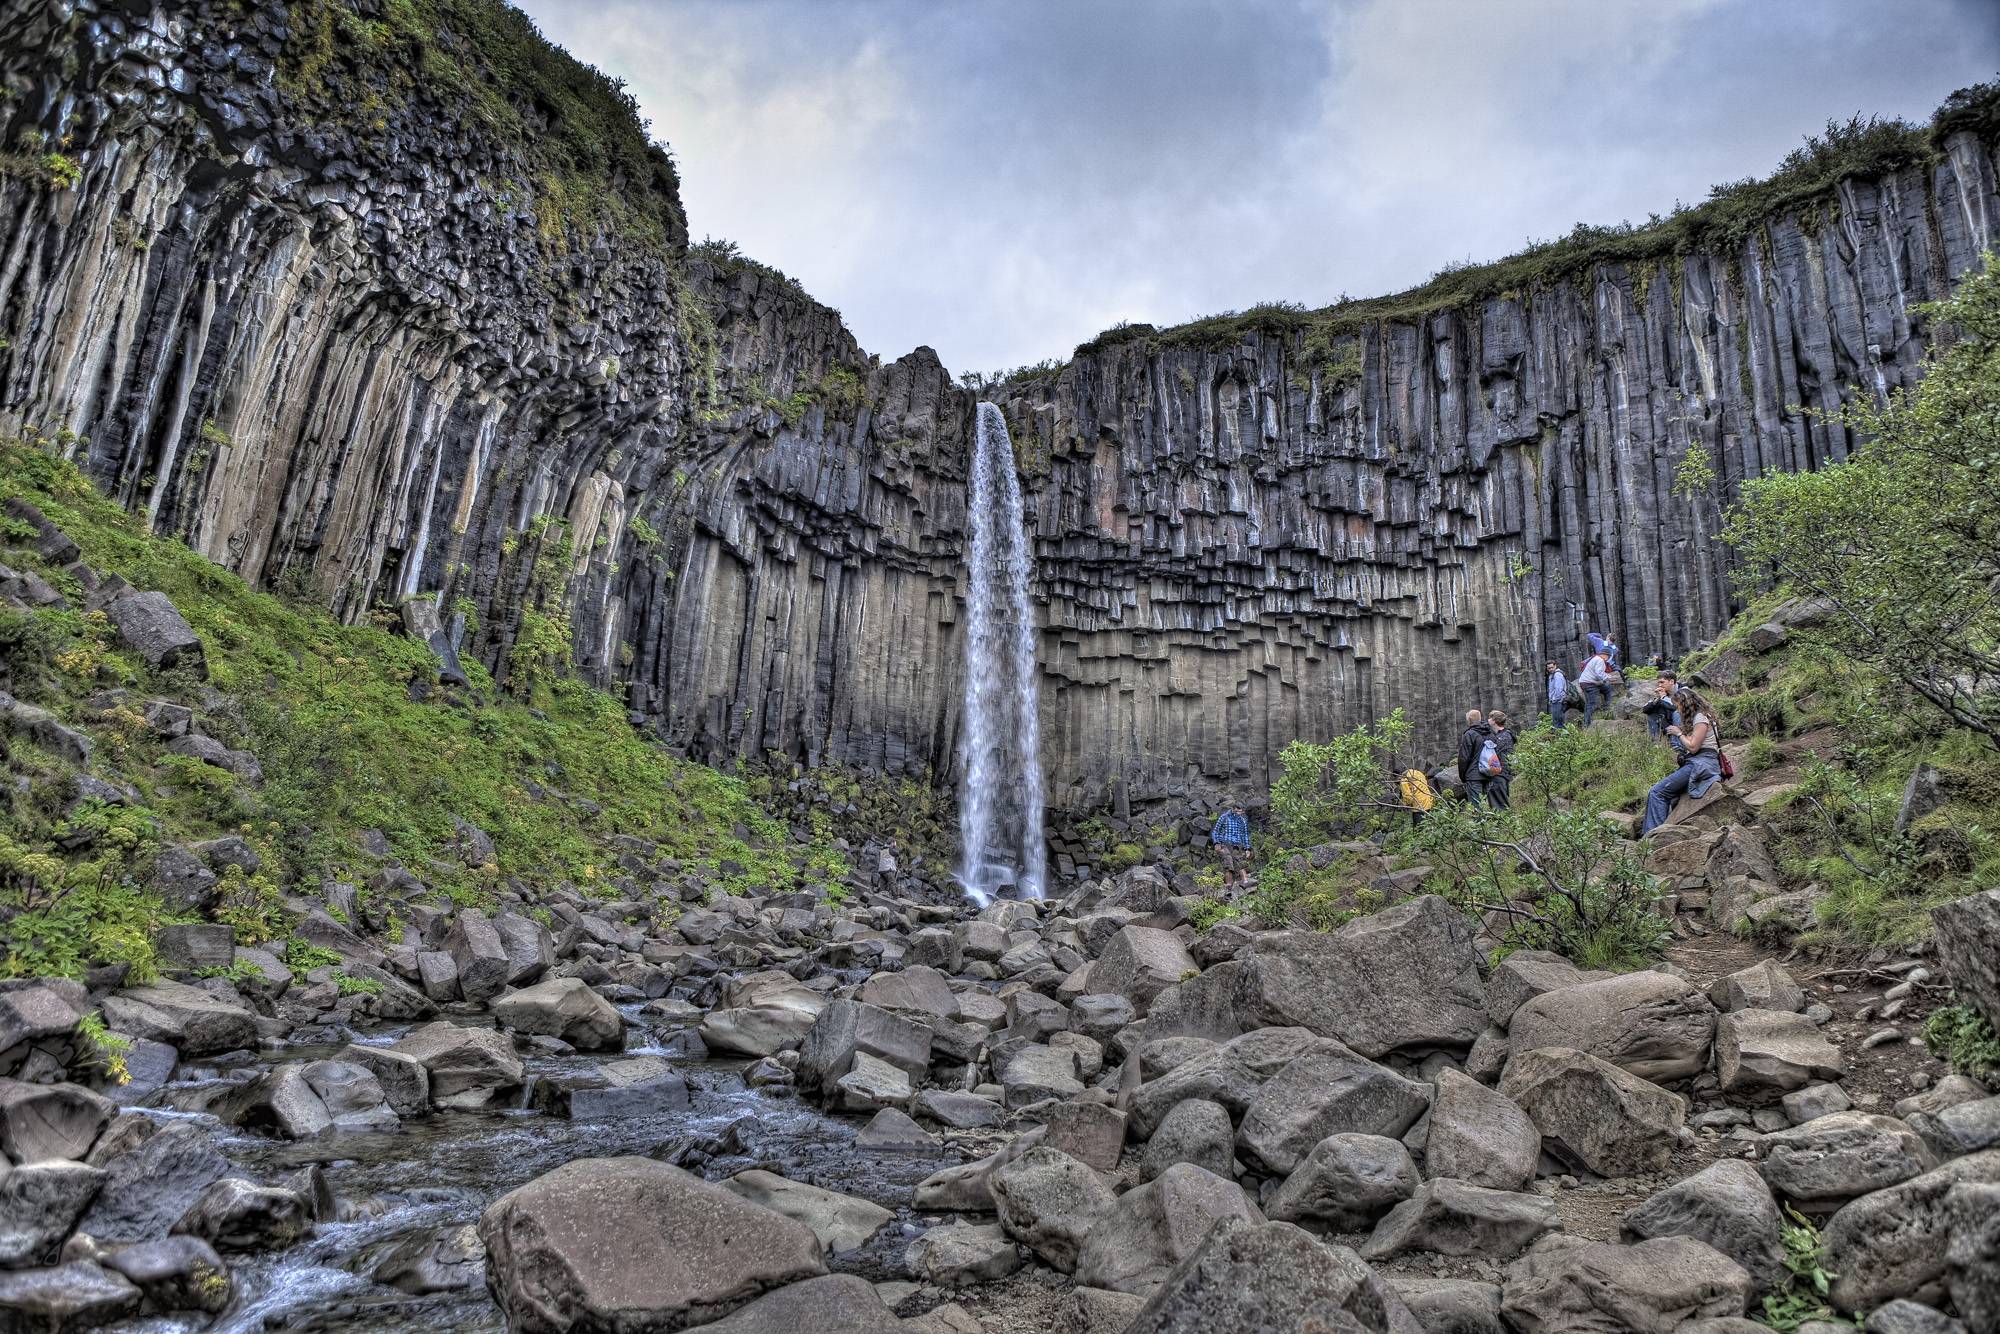 Et billede af vandfaldet Svartifoss på Island, hvor man kan se de unikke sekskantede søjler af basalt.